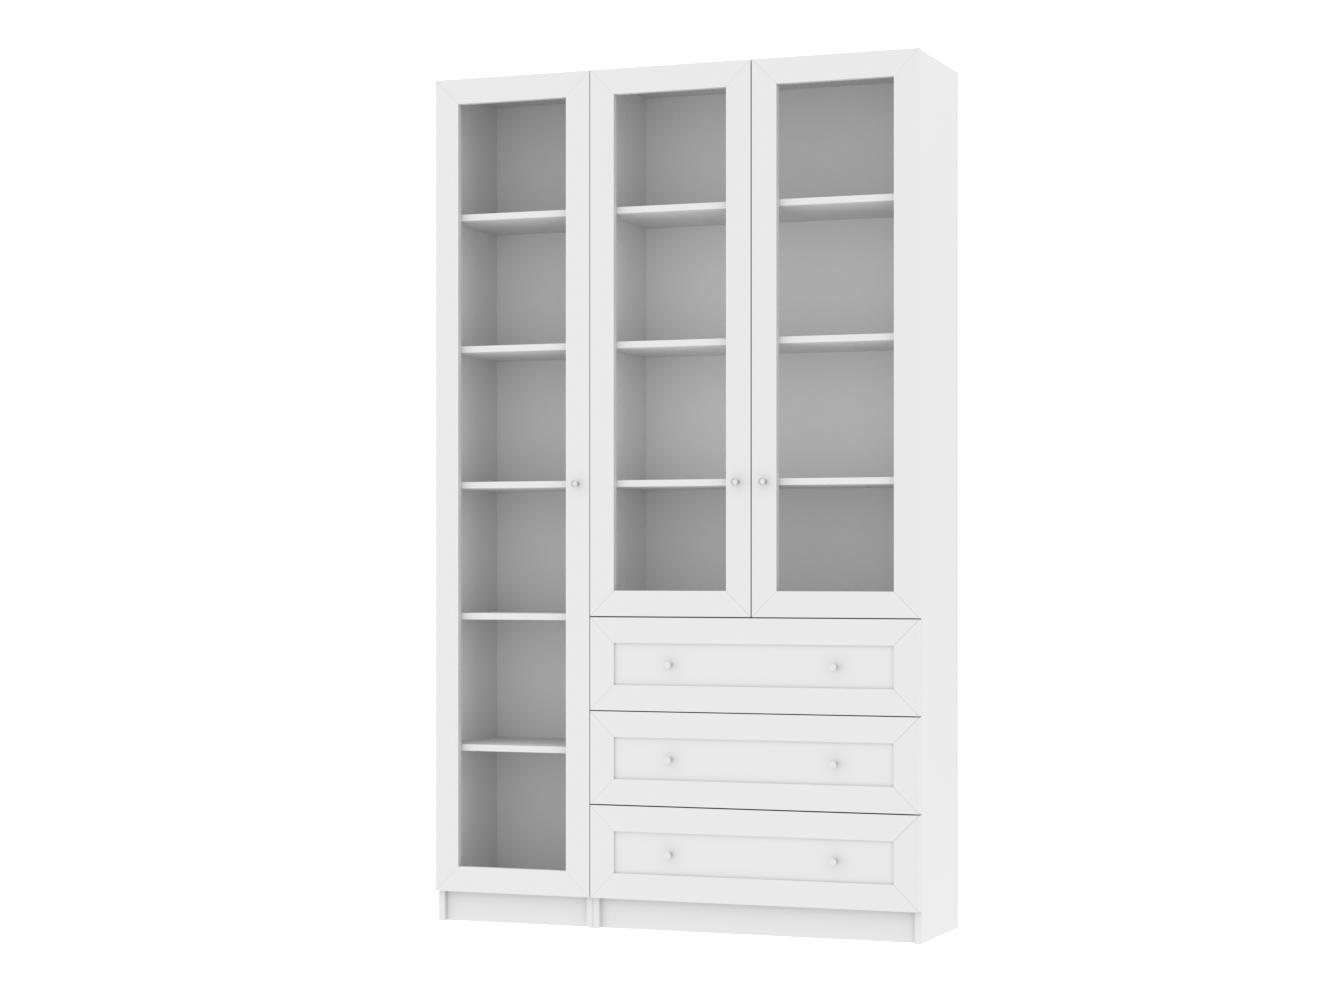 Изображение товара Книжный шкаф Билли 43 white ИКЕА (IKEA), 120x30x202 см на сайте adeta.ru